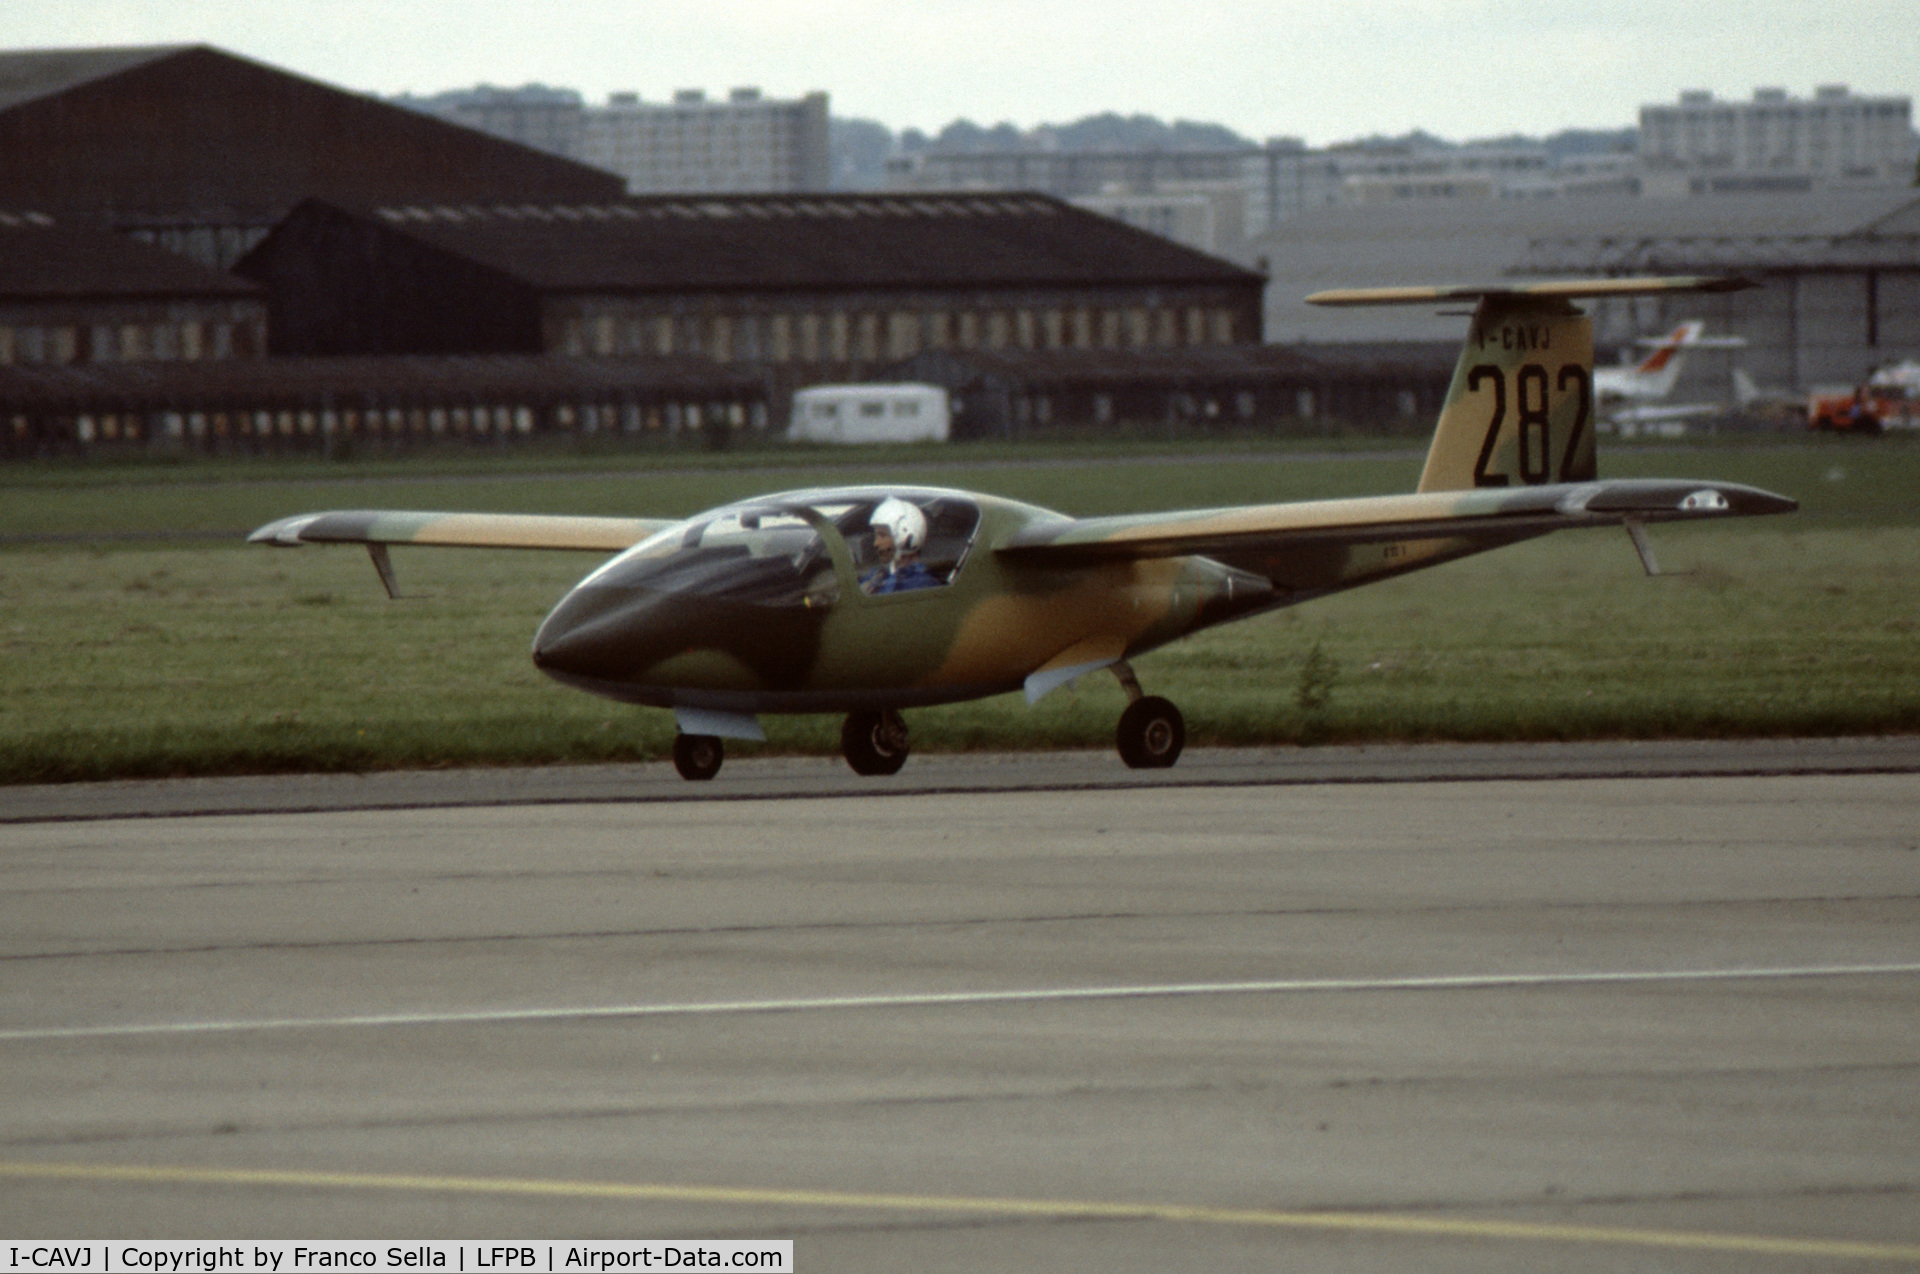 I-CAVJ, 1980 Caproni Vizzola C22J Ventura C/N 001, Caproni C22J Prototype I-CAVJ at the 1981 Paris Air Show